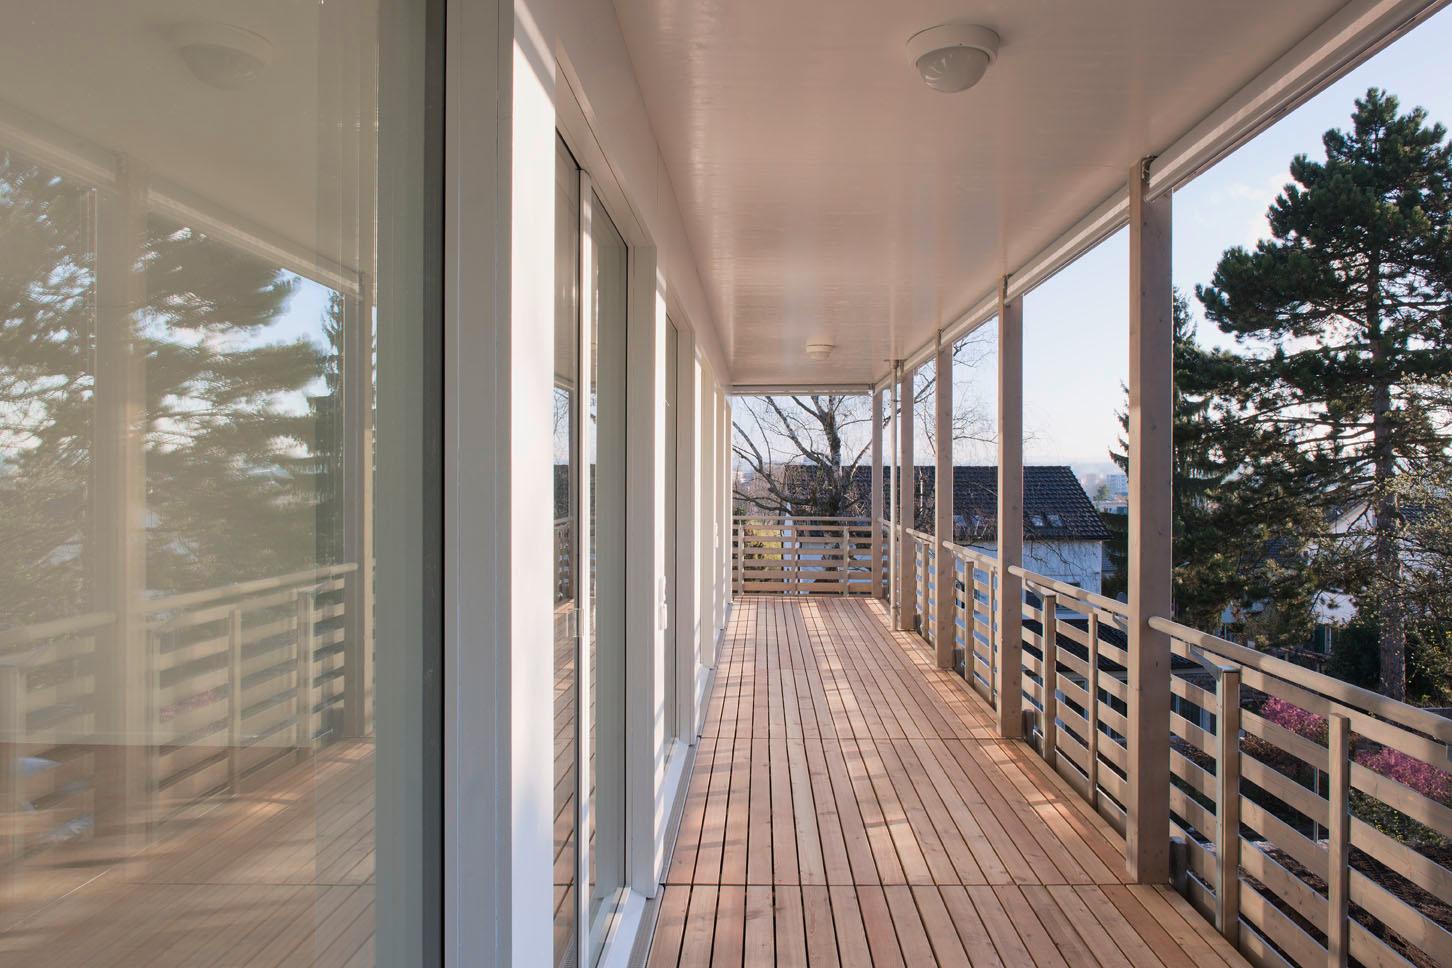  Architektur-Reportage: Weiter gebaut und gewonnen: Die Terrassen sind sorgfältig mit Holz gestaltet